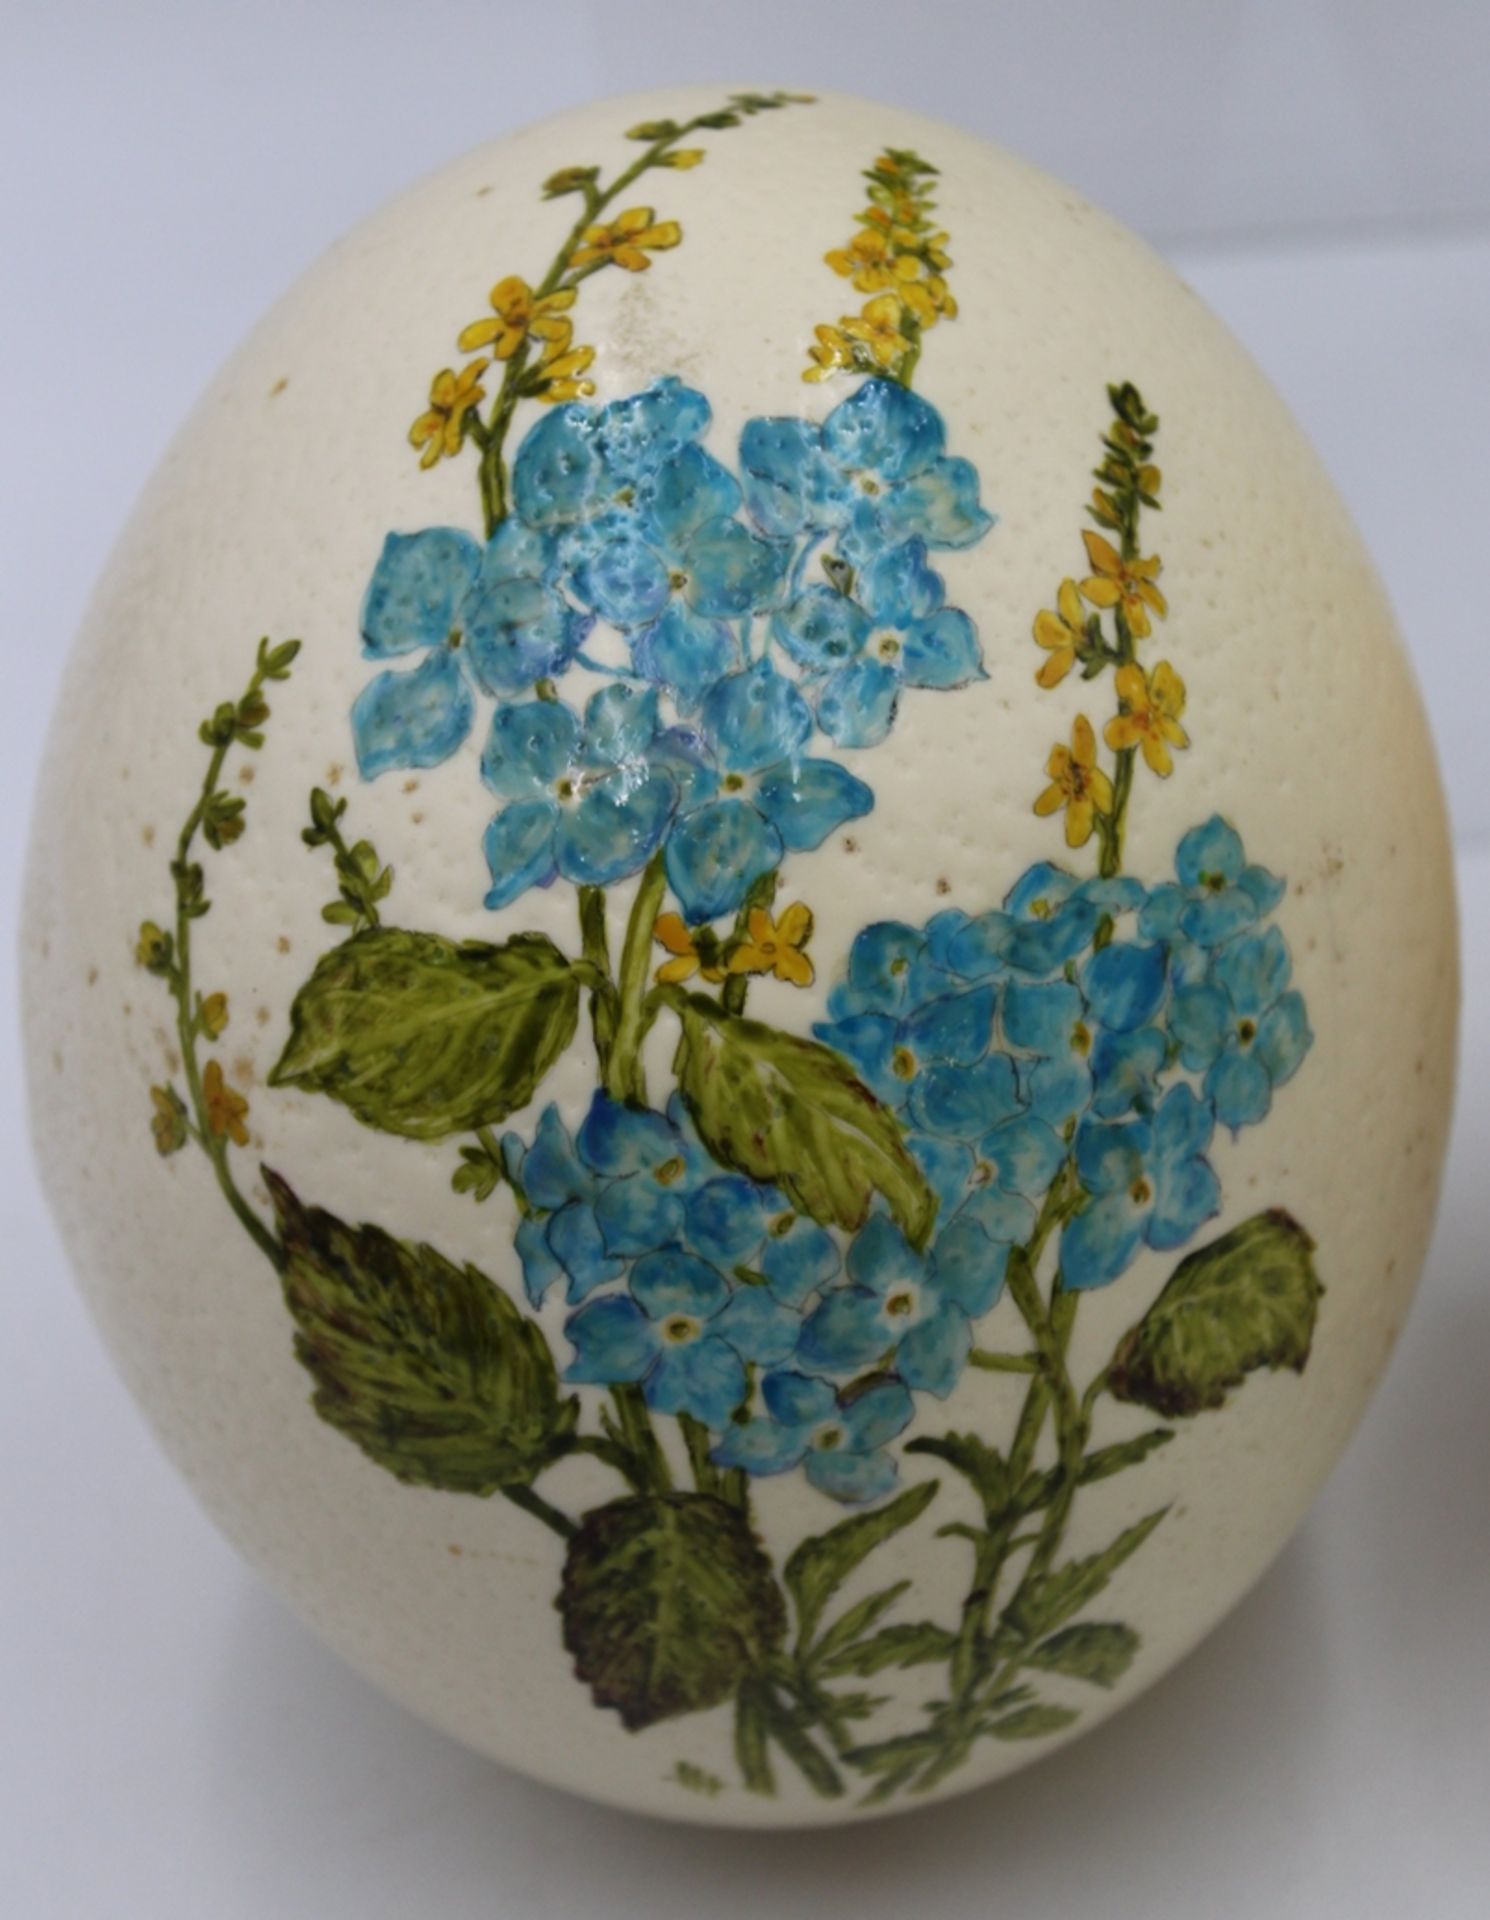 3x floral bemalte Straussen-Eier, ca. H-16cm. - Bild 3 aus 5